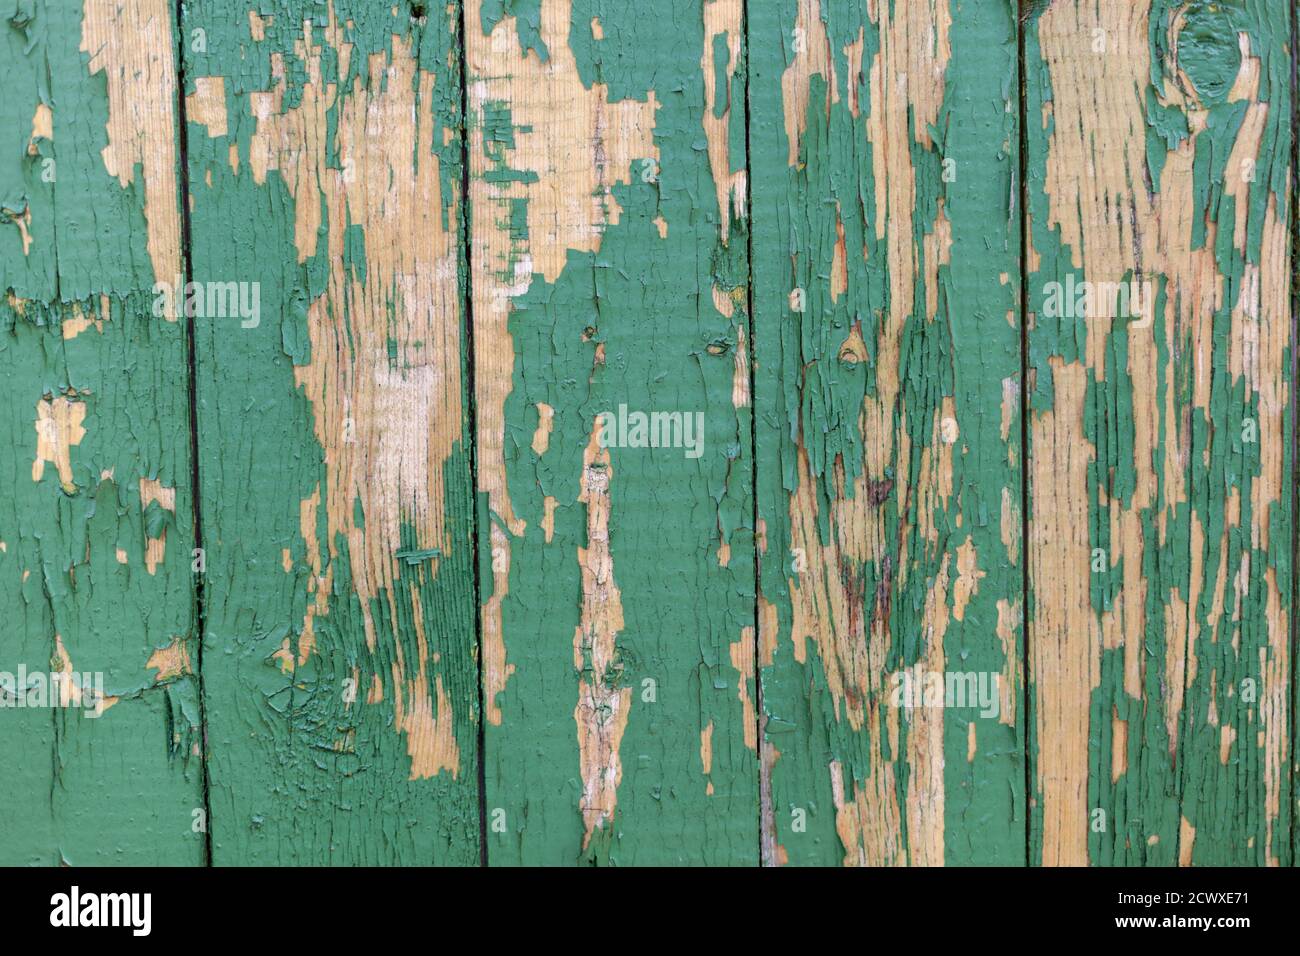 Verde scuro grunge graffiato parete in legno testurizzato. Vecchia struttura in legno con vernice da peeling. Foto Stock